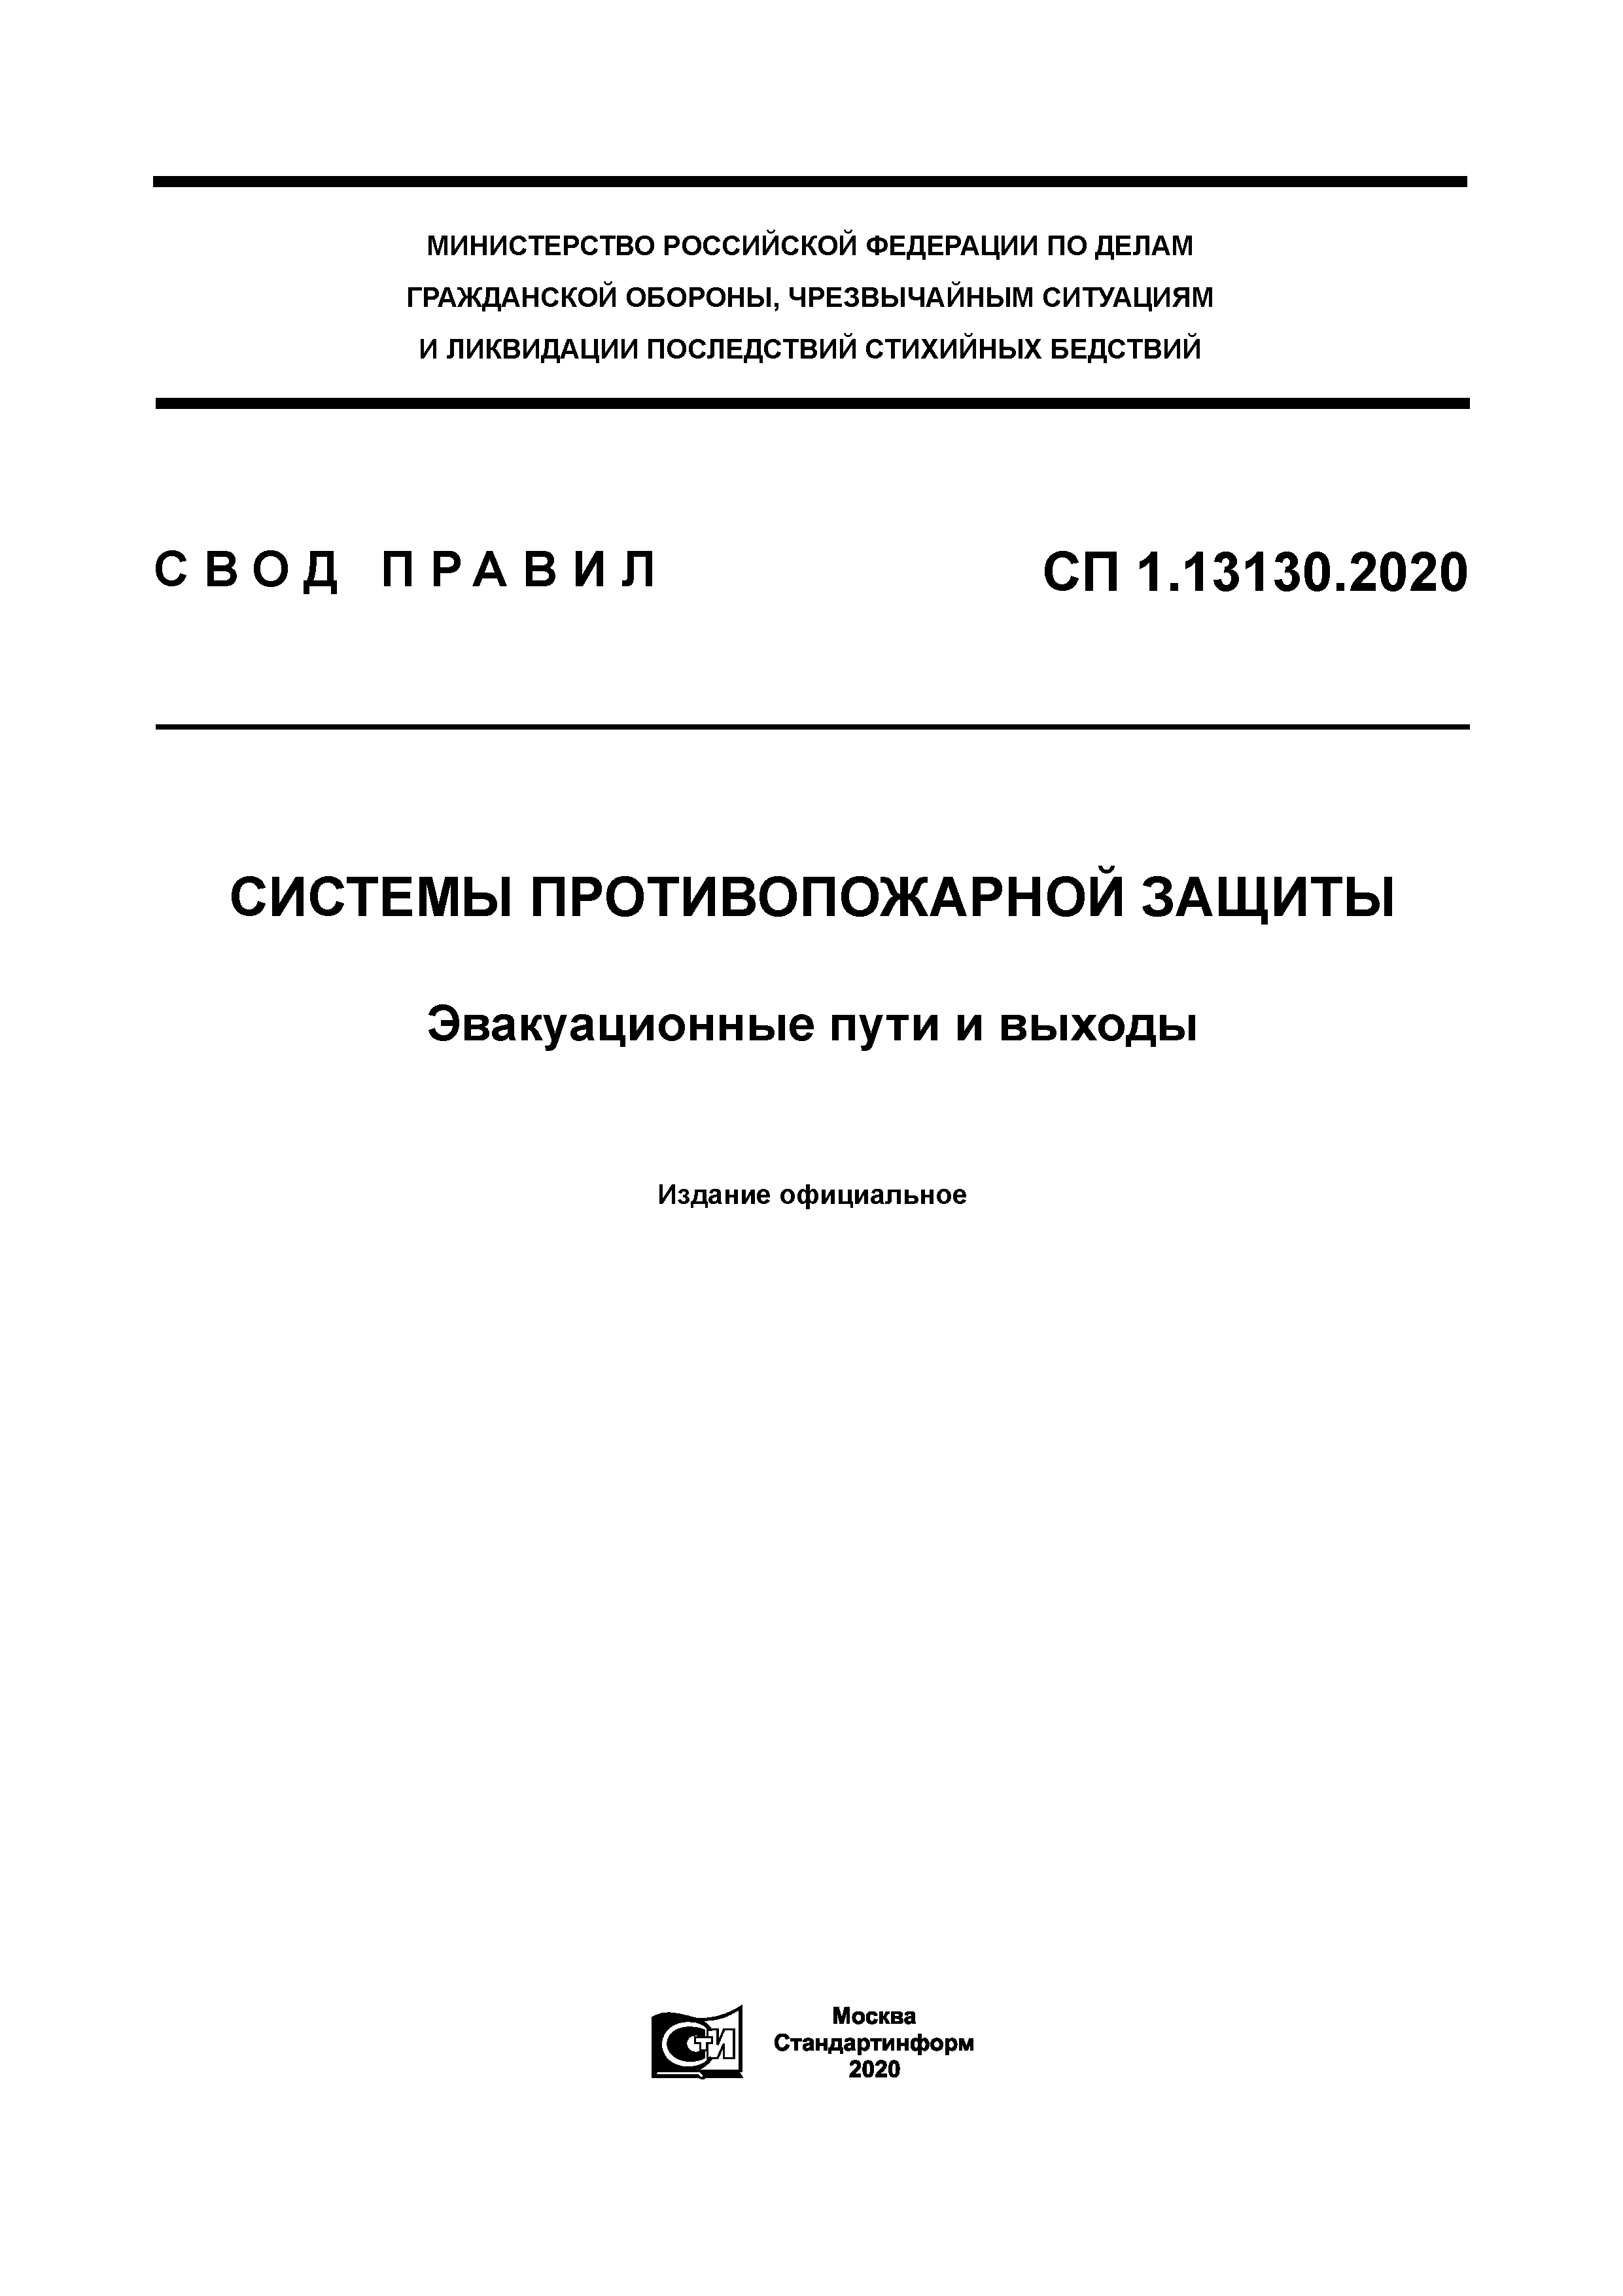 СП 1.13130.2020